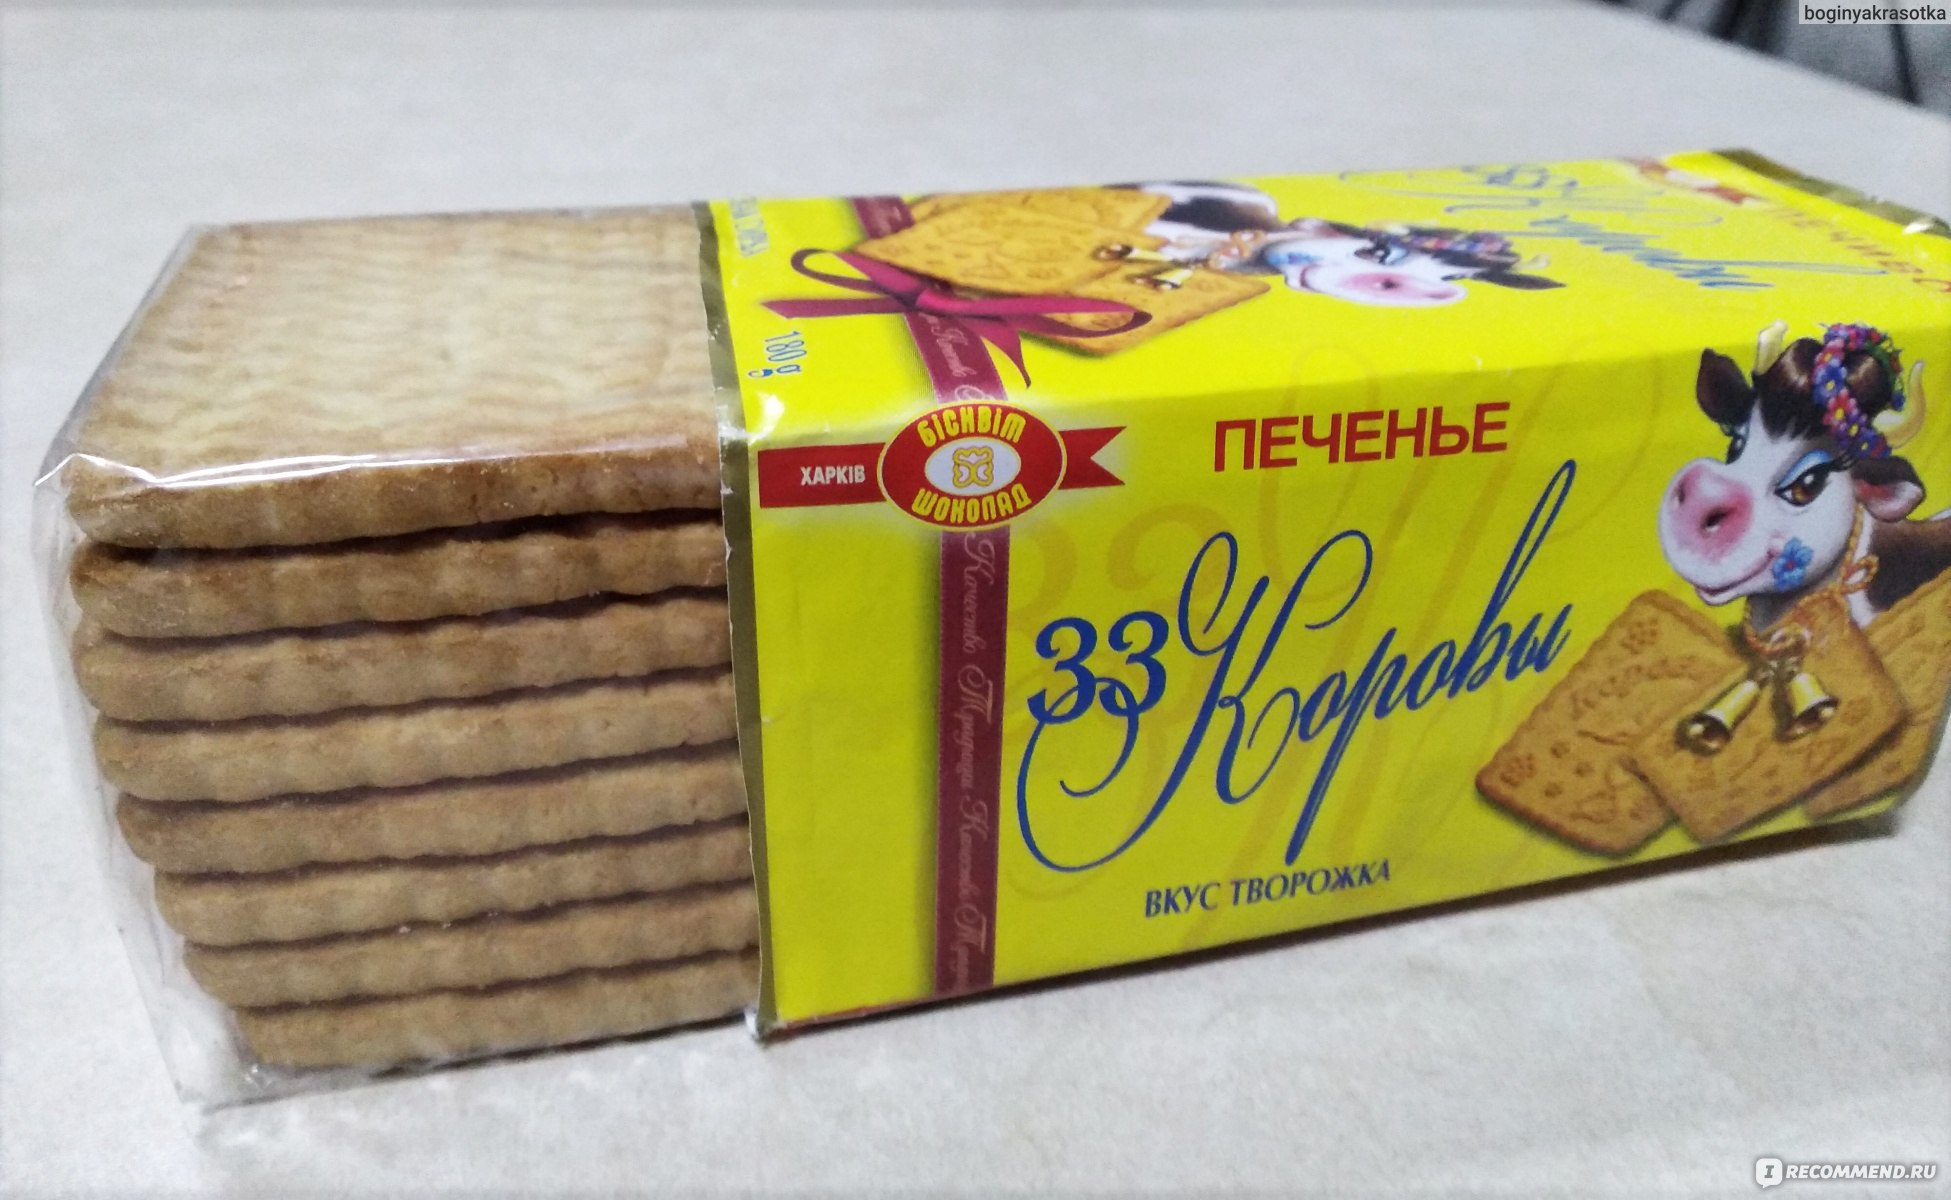 Советское печенье в пачках